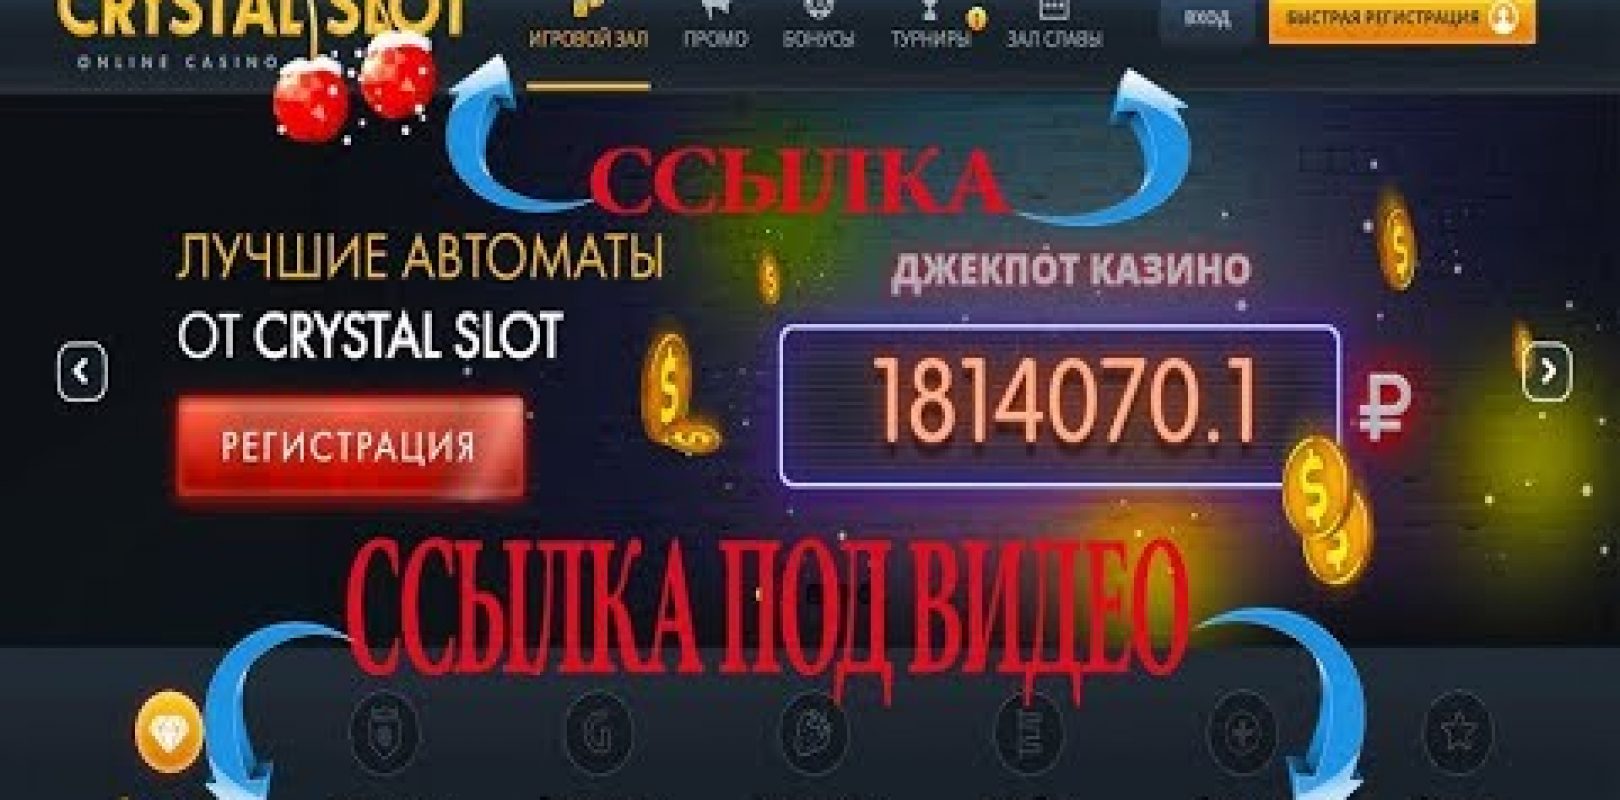 Покер играть бесплатно онлайн и без регистрации в казино вулкан